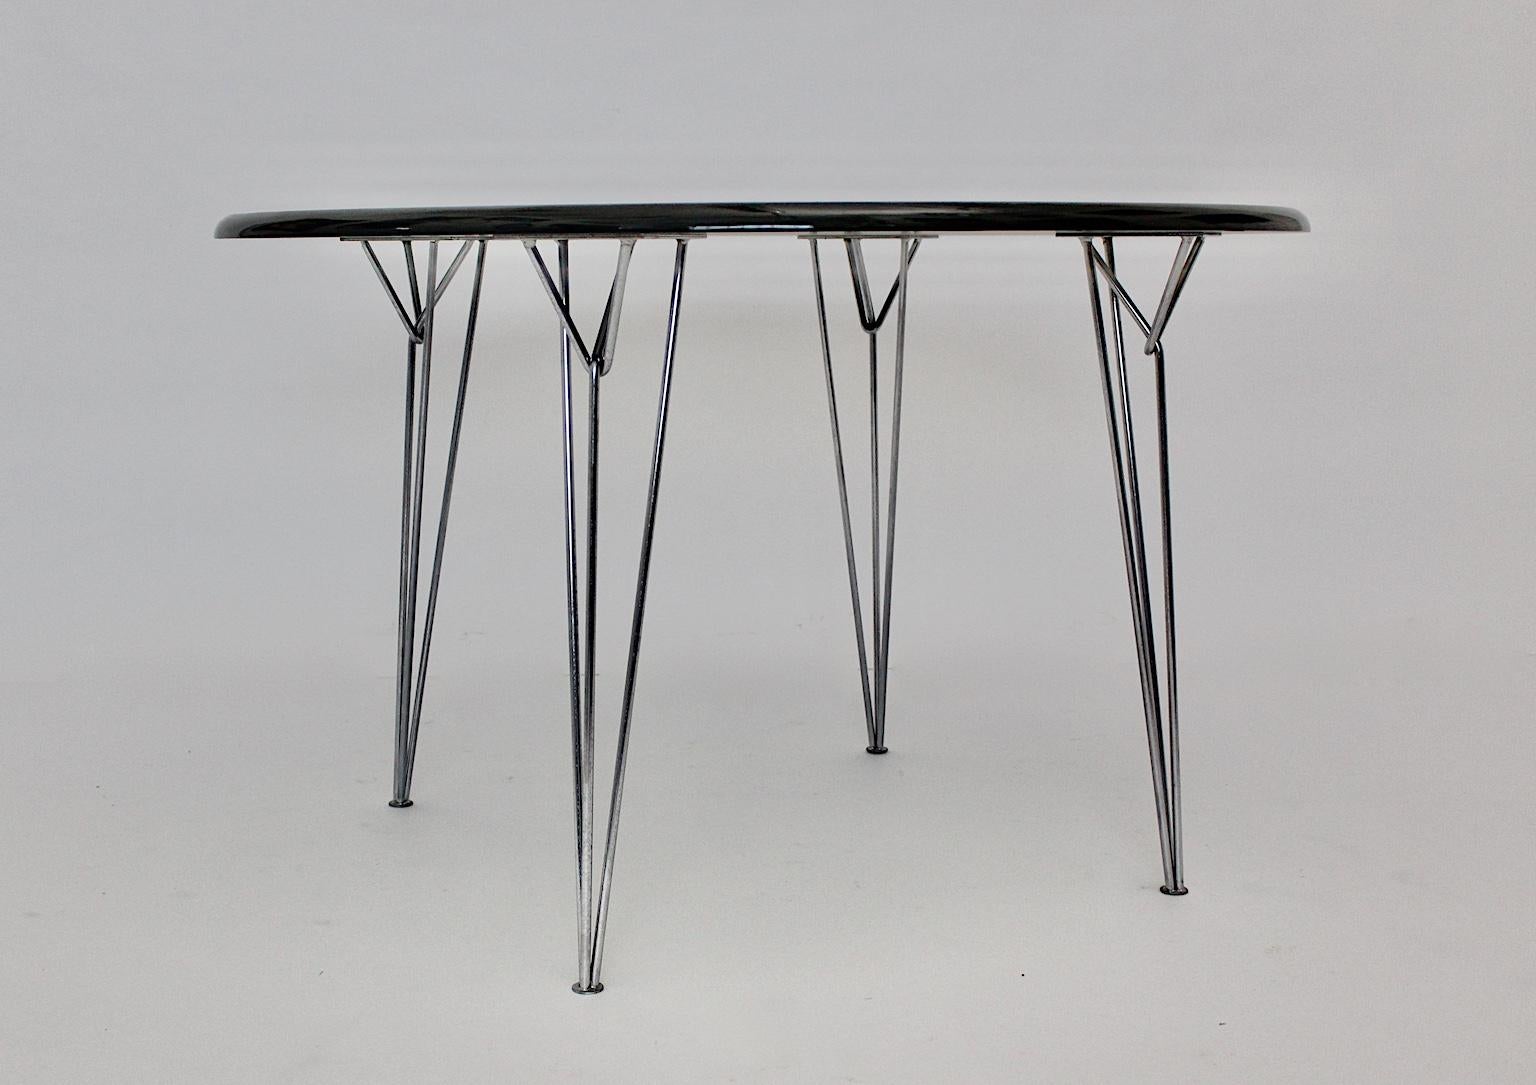 Scandinavian Modern schwarzer Vintage-Esstisch oder Mitteltisch, der zeigt
einem Haarnadelsockel aus Metall und einer neu lackierten, glänzenden Glasfaserplatte.
Der Esstisch besticht durch seine klaren und minimalistischen Gestaltungsmerkmale.
Der